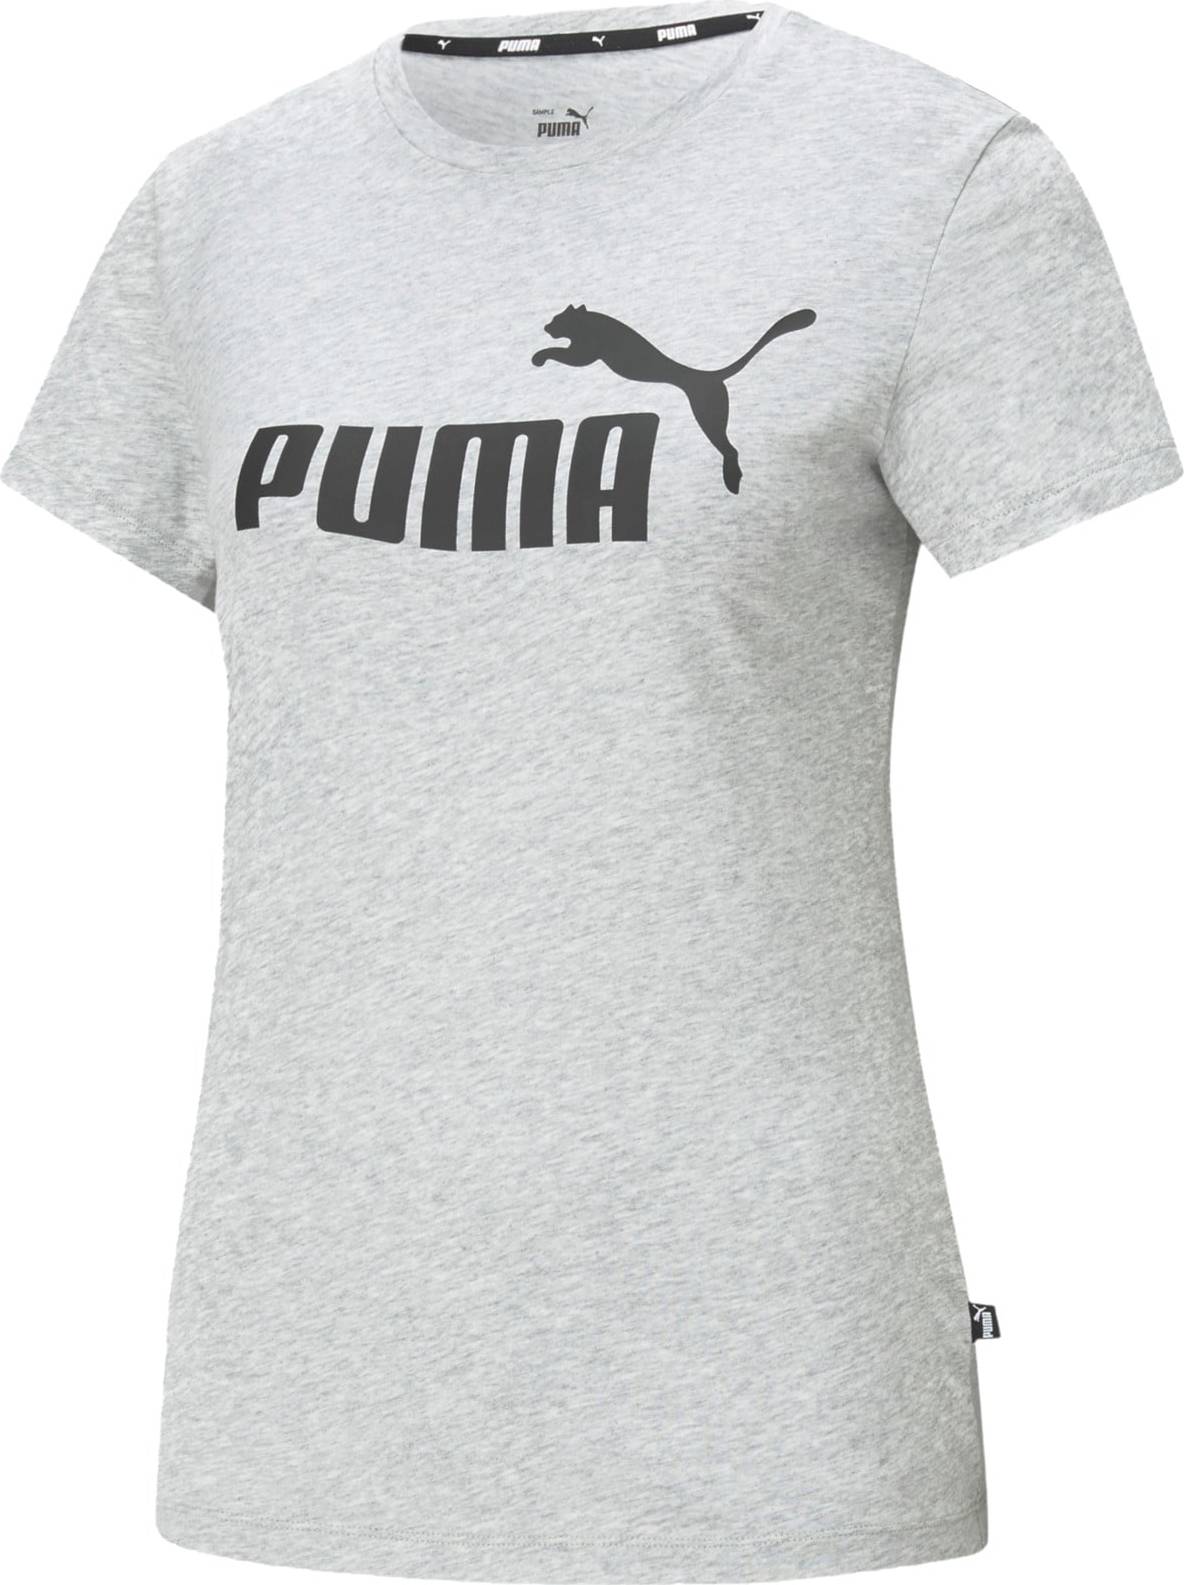 Funkční tričko Puma šedý melír / černá